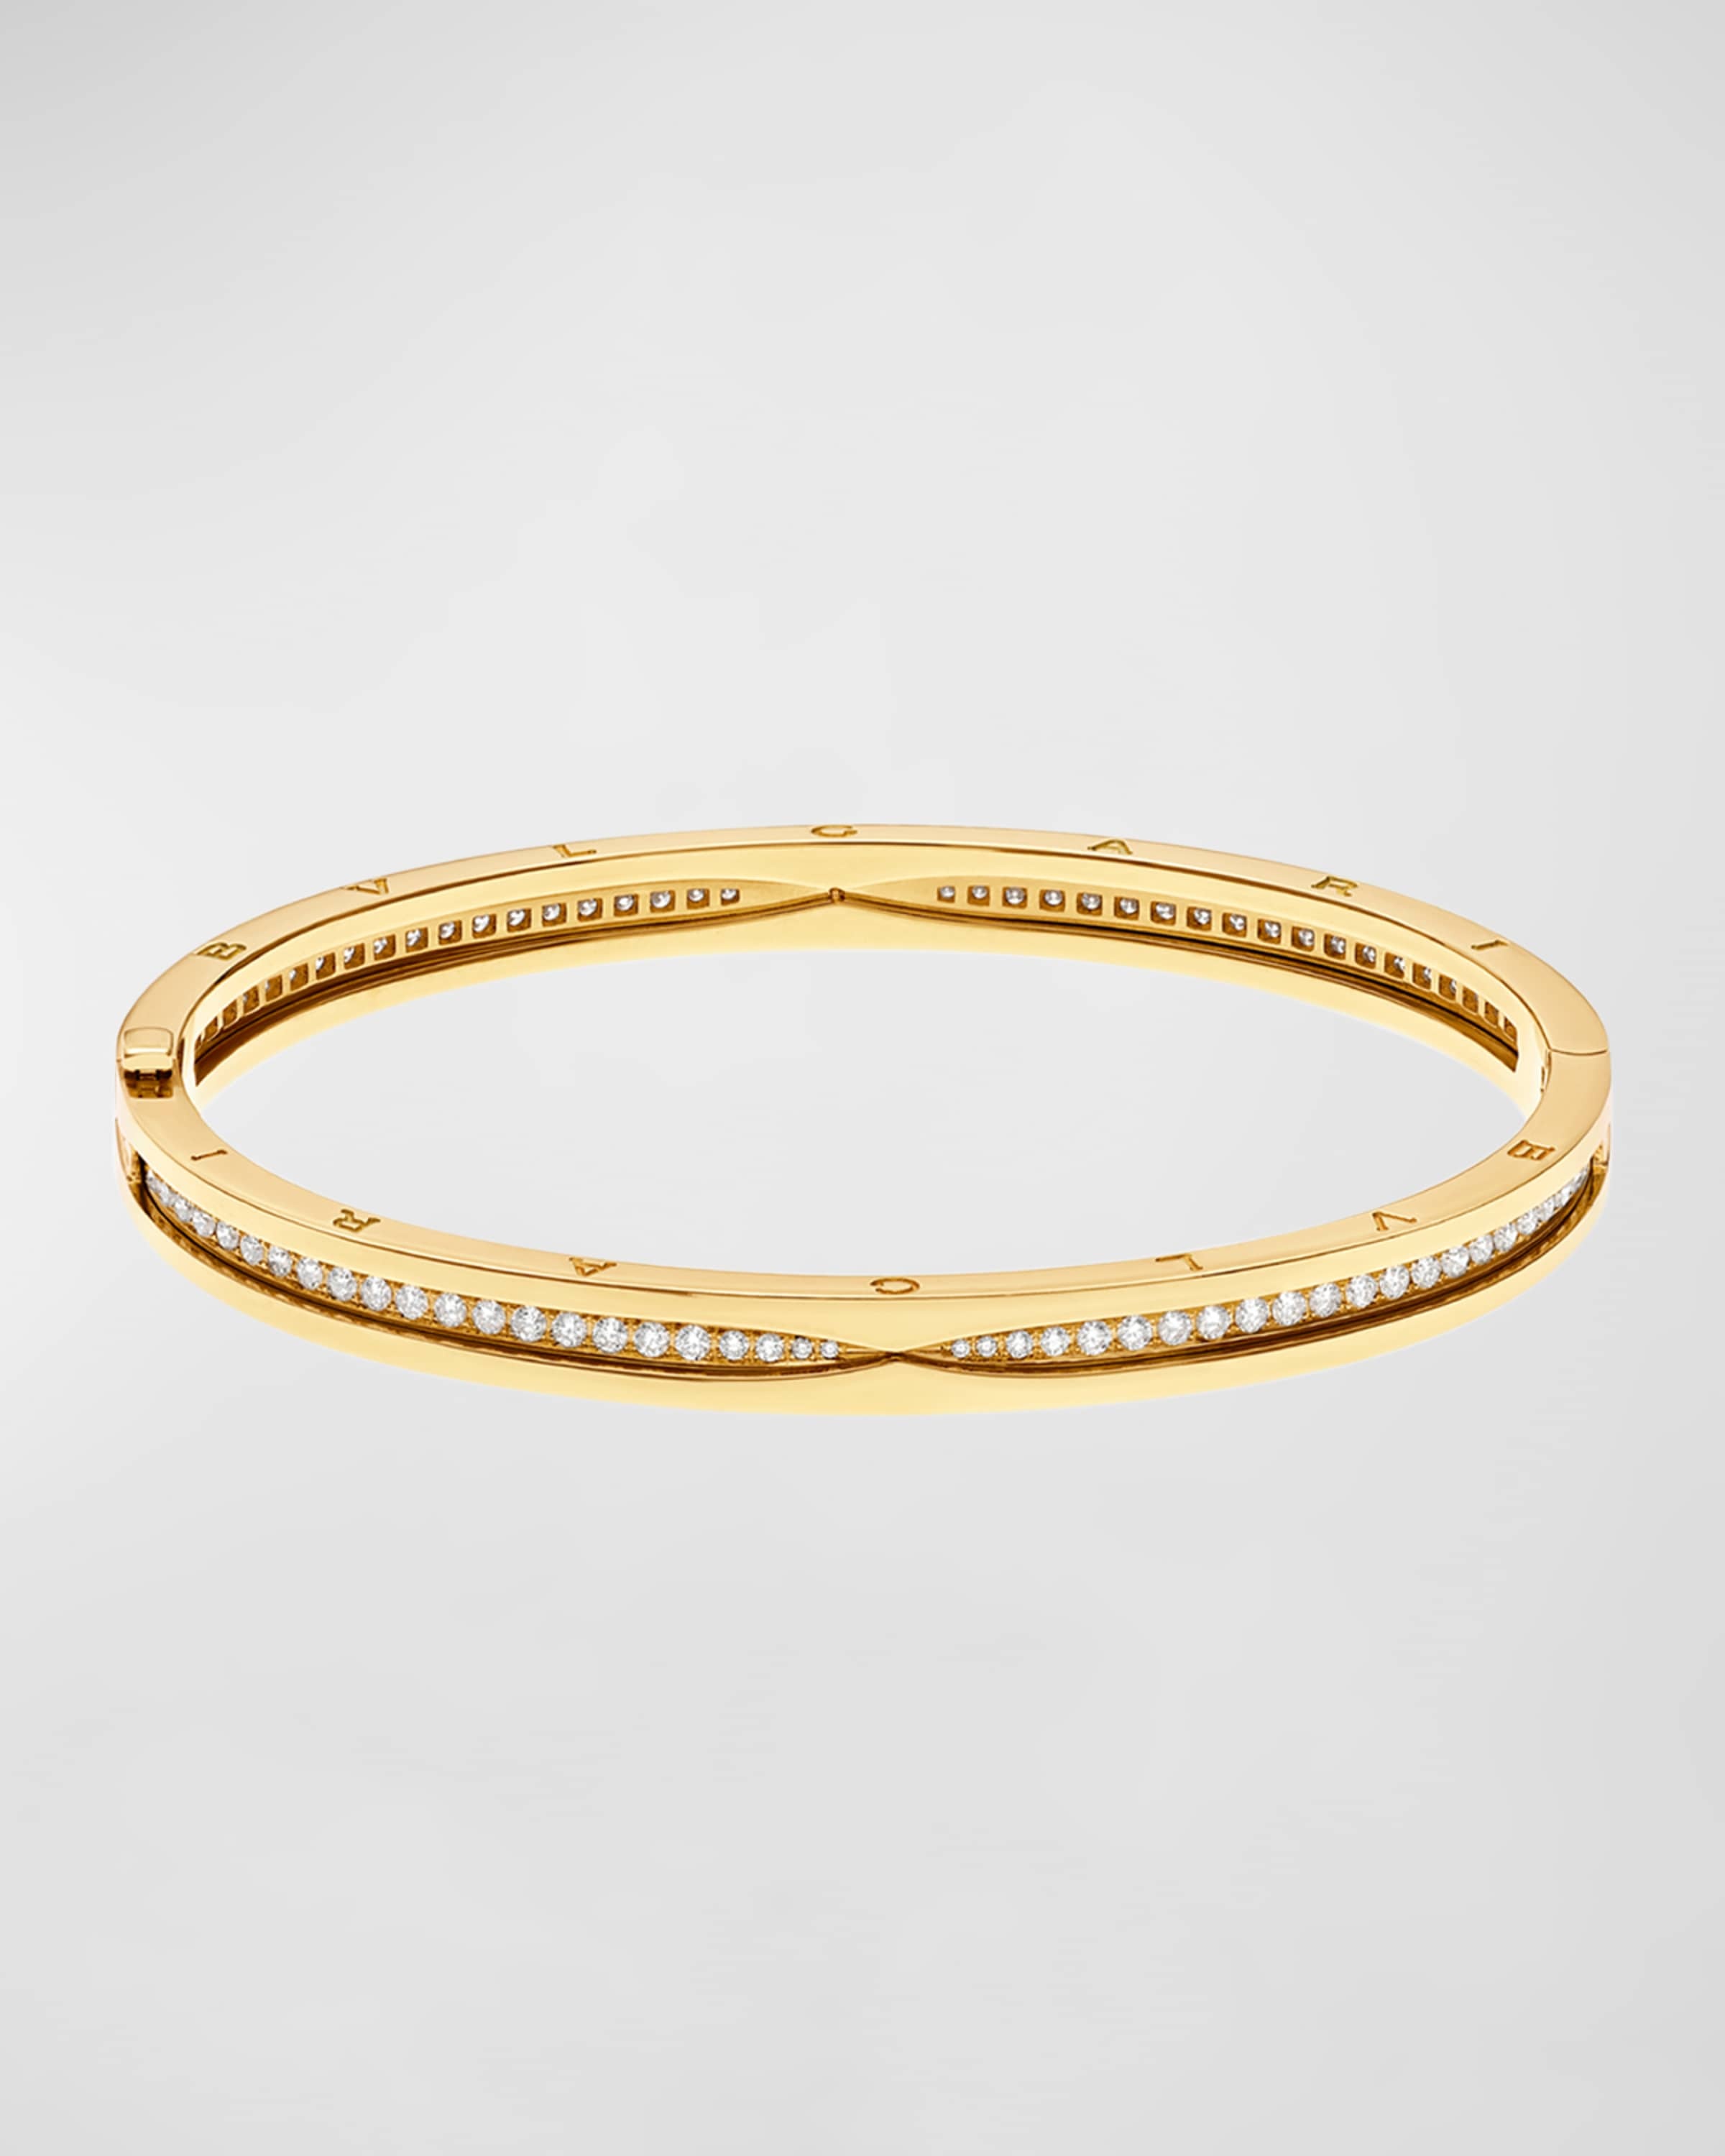 B.Zero1 18k Yellow Gold Diamond Bangle Bracelet, Size M - 3